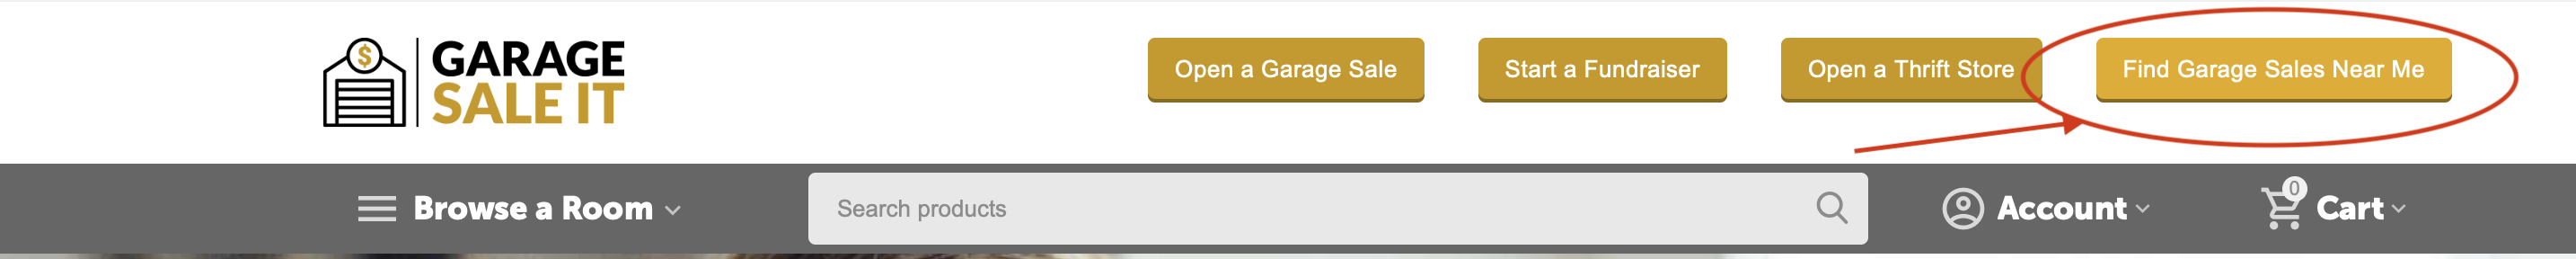 garage-sales-near-me